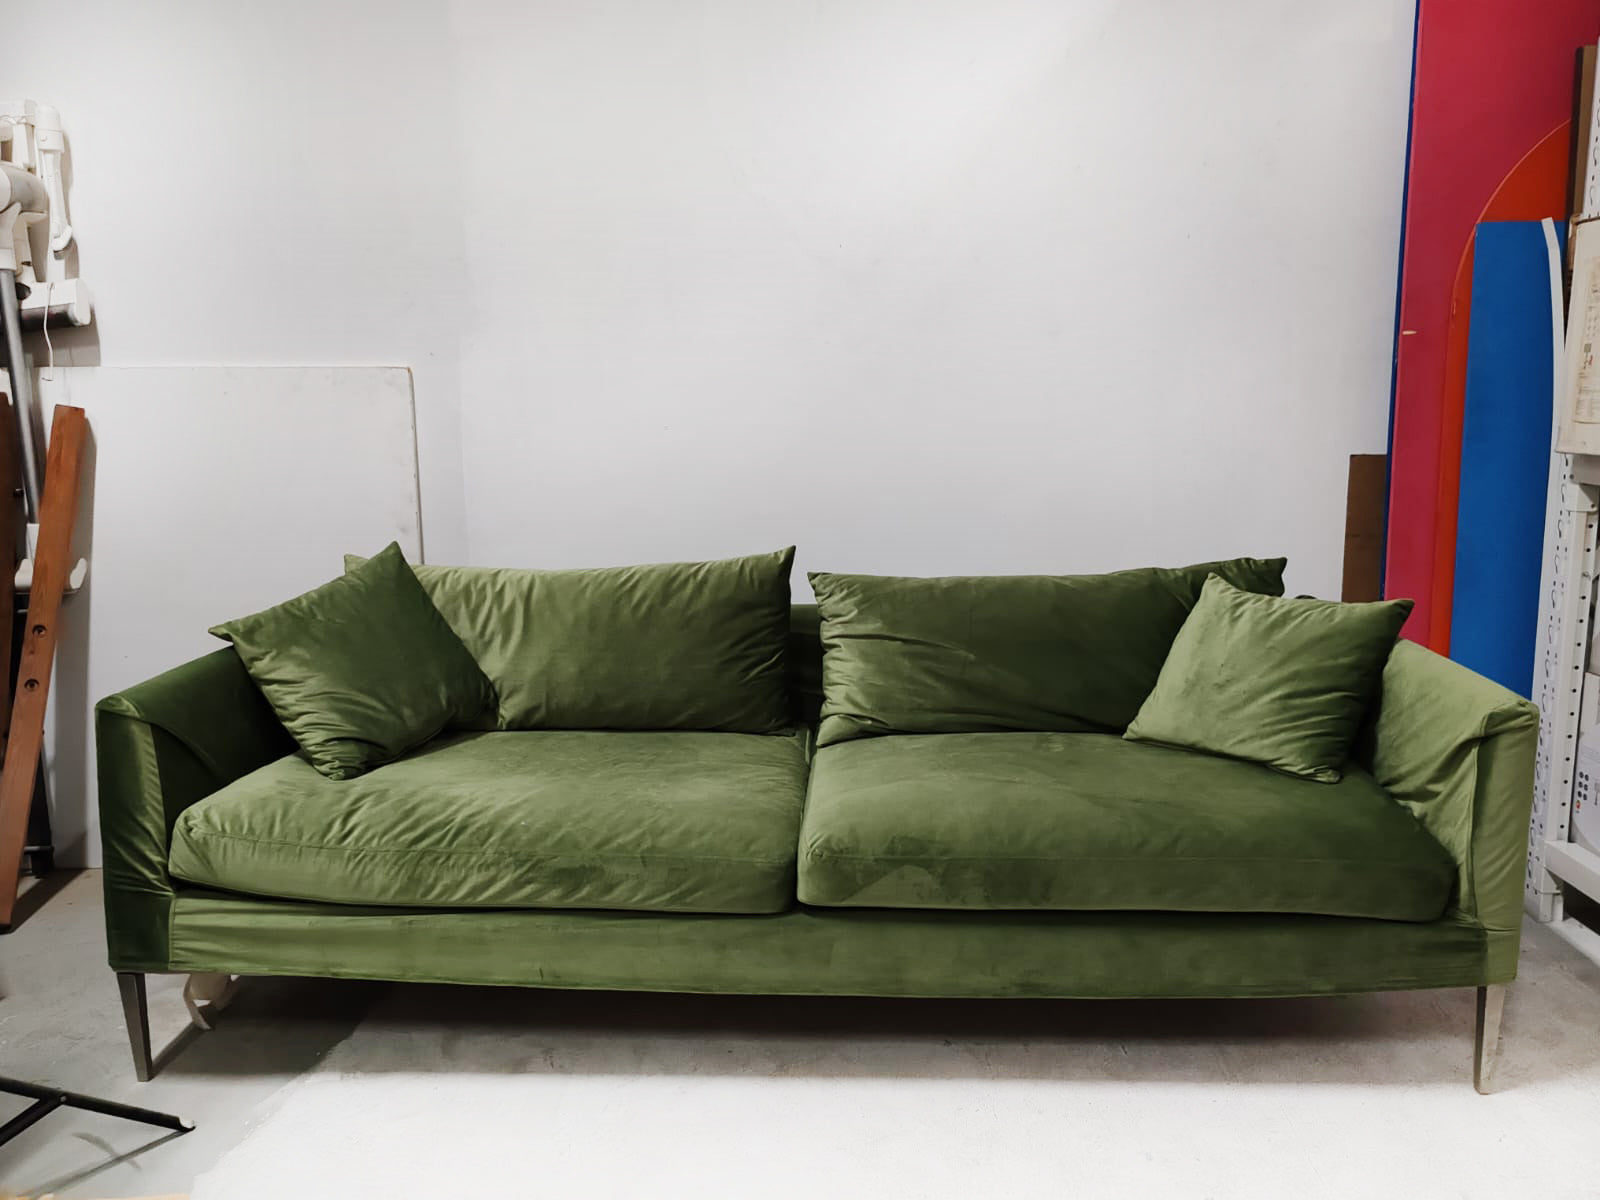 Green Velvet Sofa